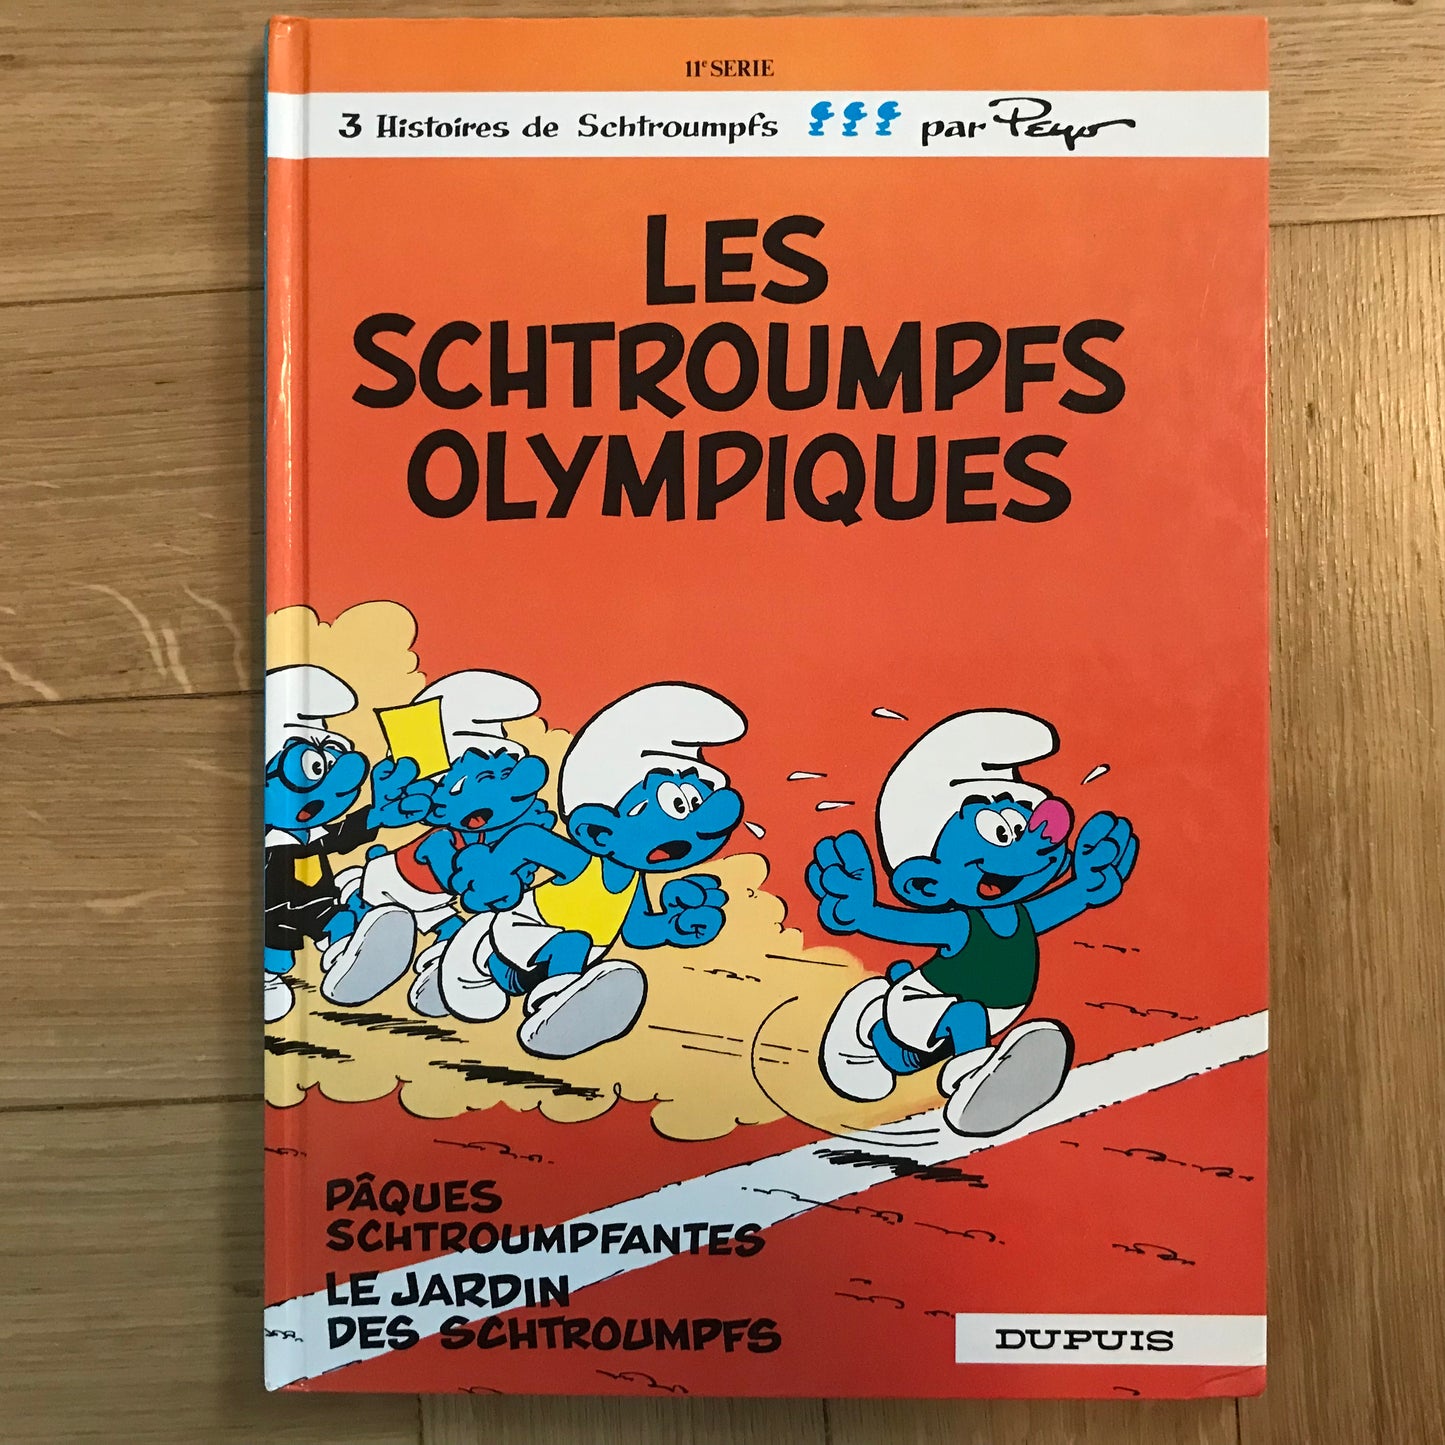 Les Schtroumpfs - Les schtroumpfs olympiques - Peyo